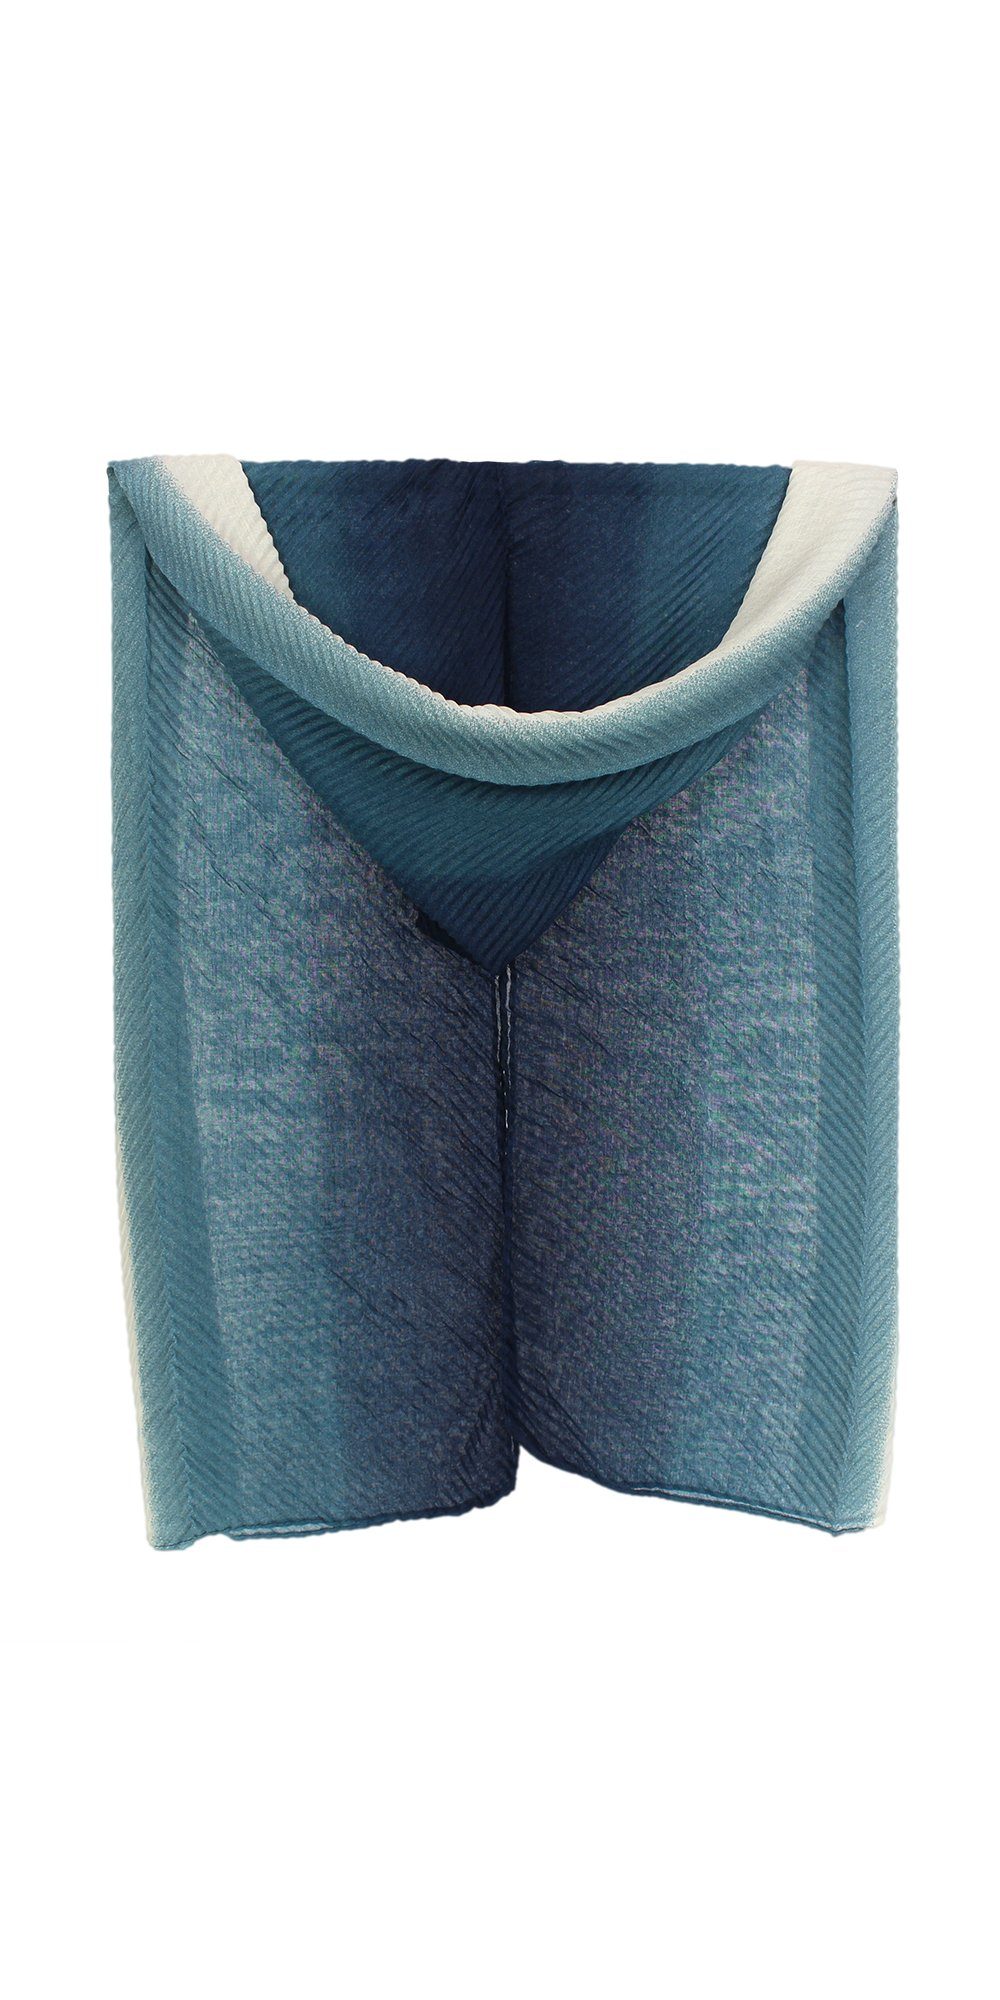 ZEBRO Modeschal Plisseeschal mit verlaufenden Farben blau